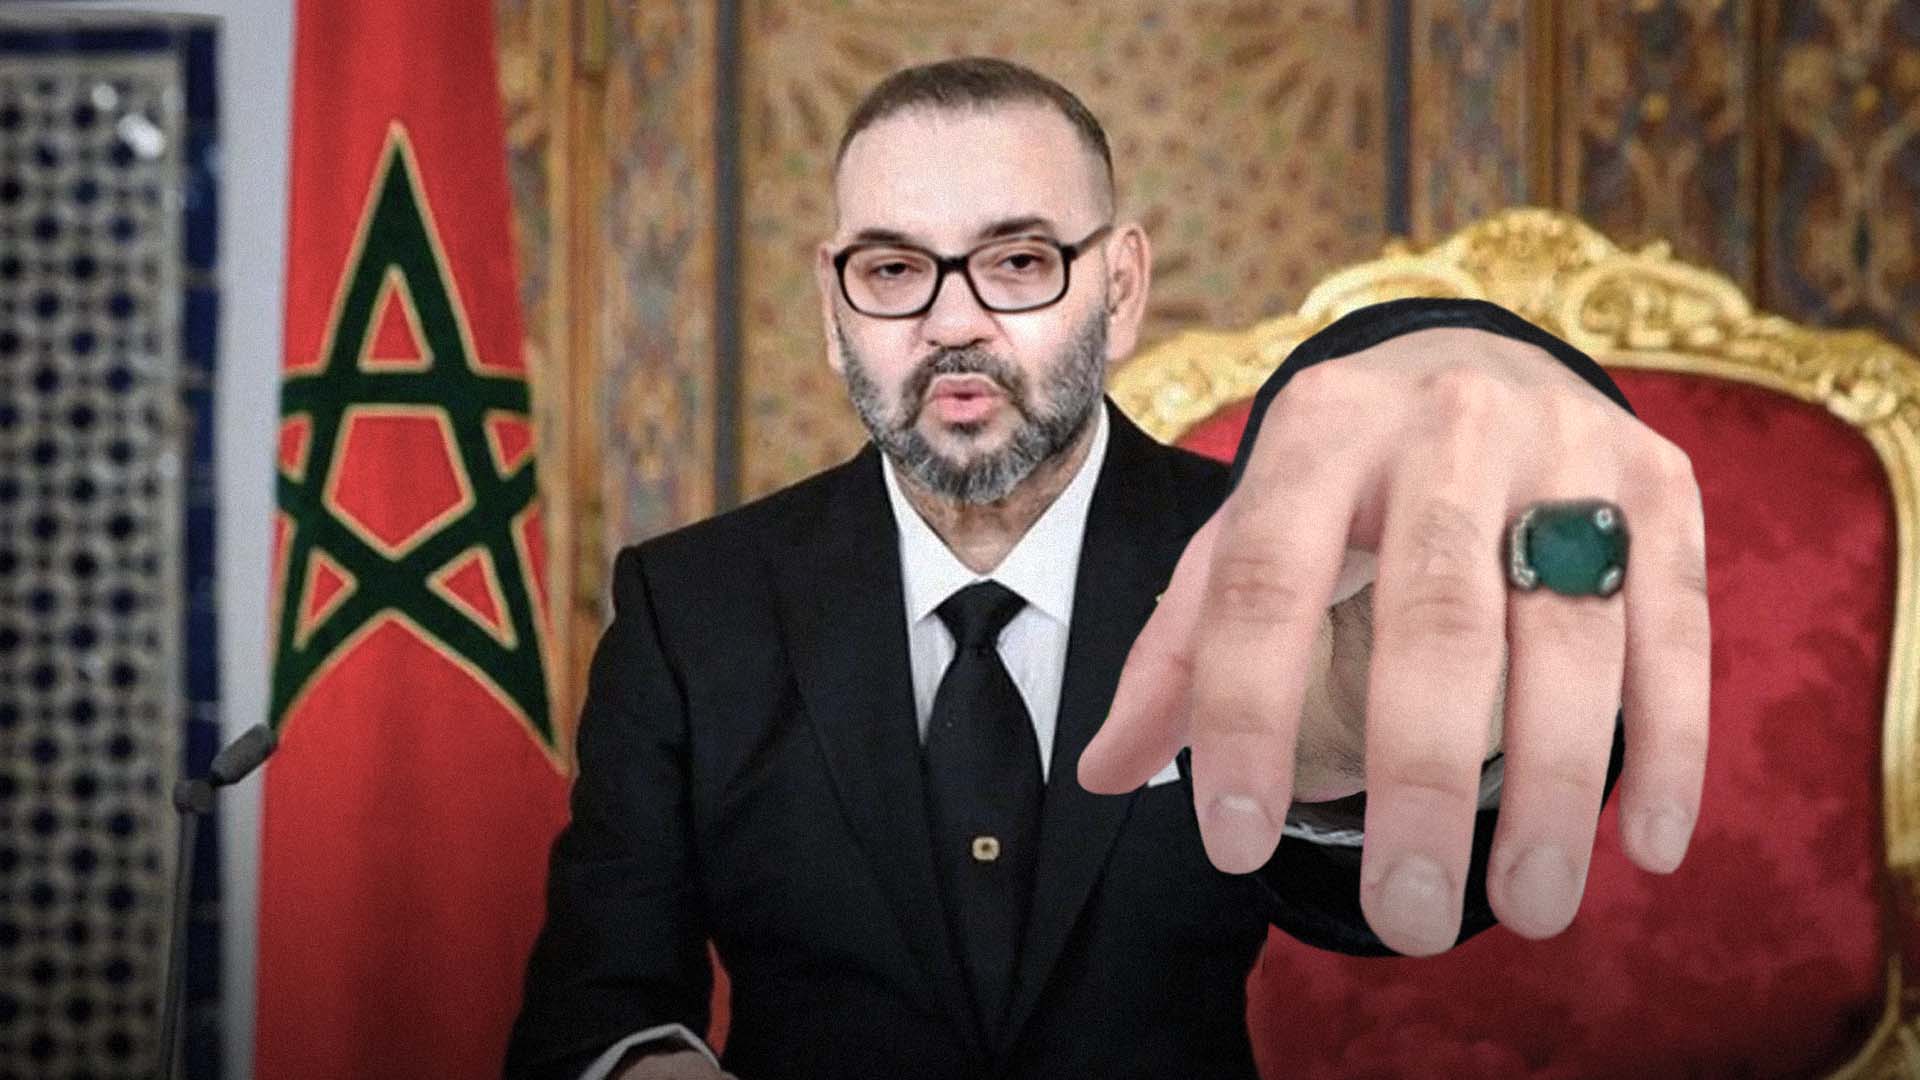 صورة ملك المغرب يمد يده للجزائر كي تقبلها